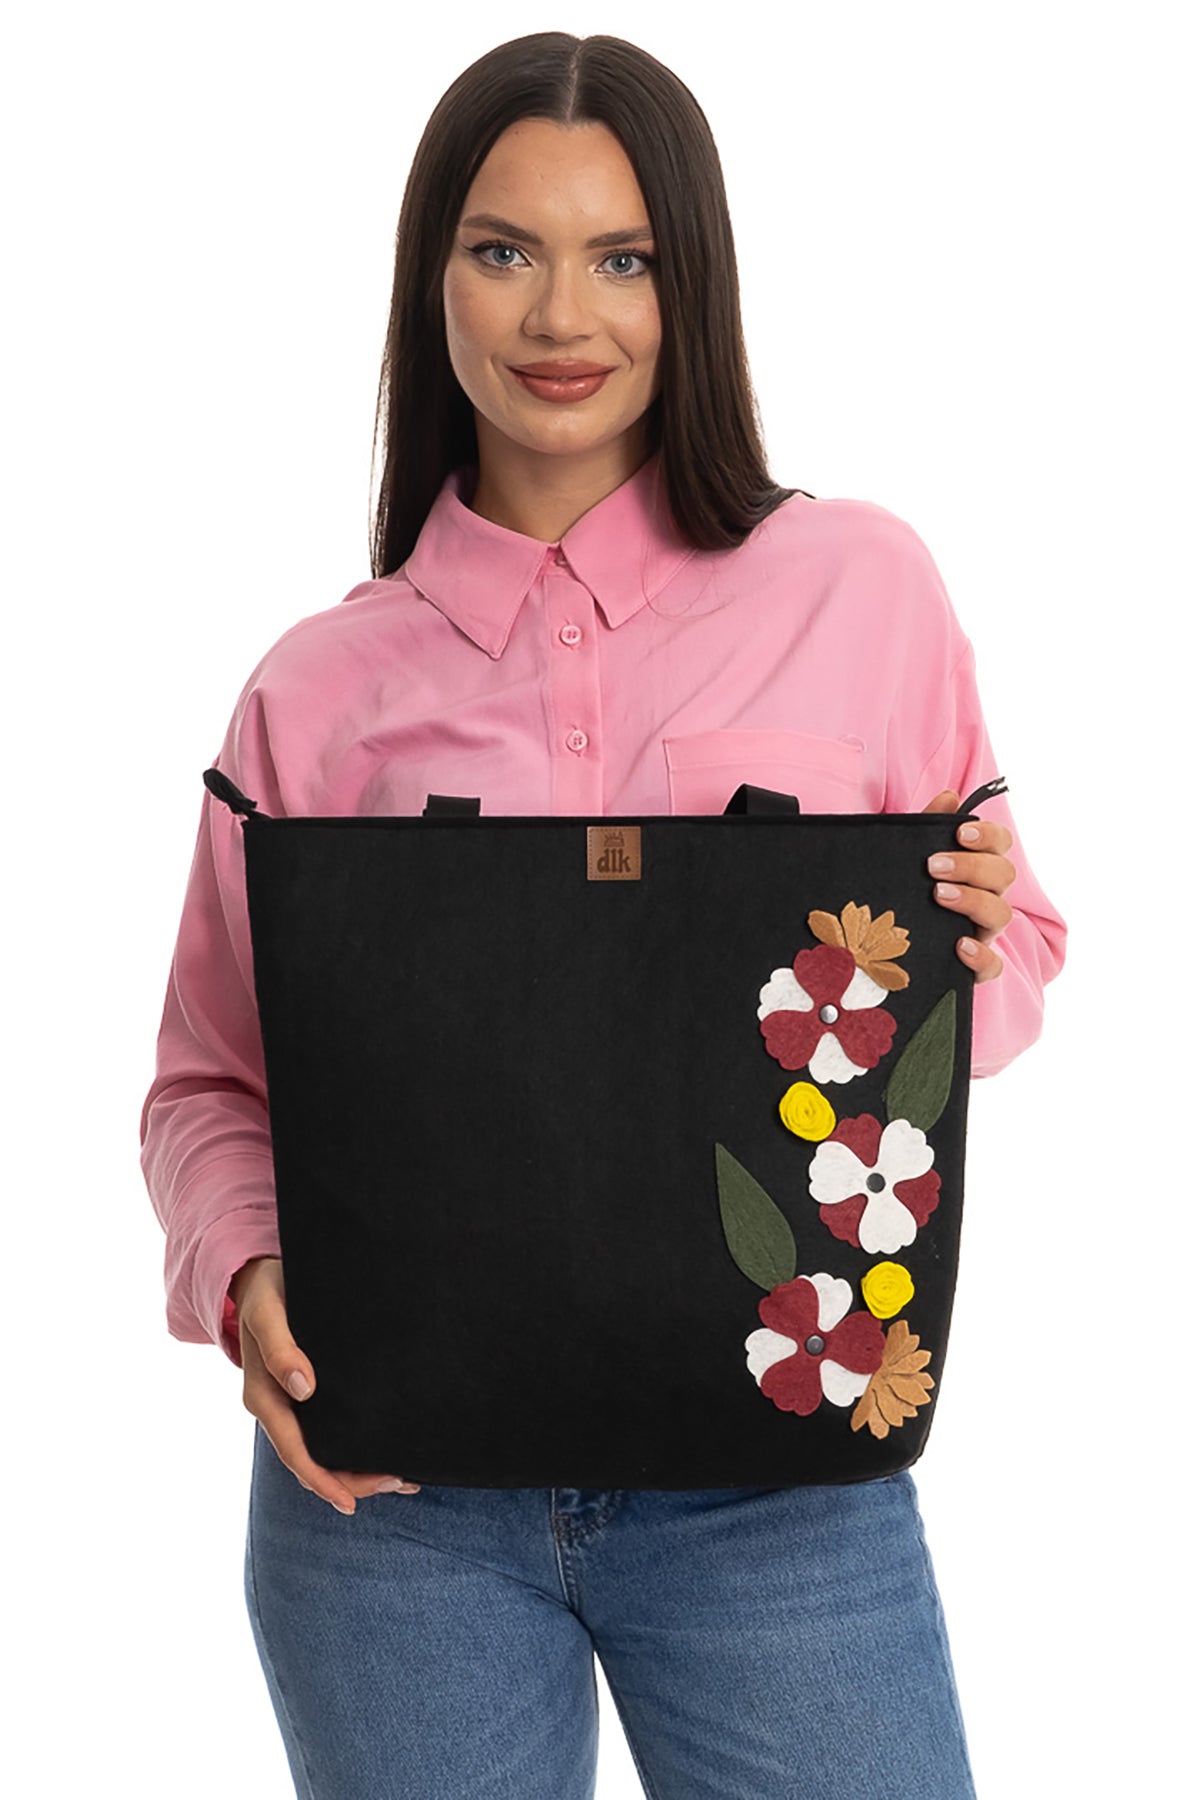 Handmade Large Size Felt Shoulder Bag - Flower Bag -40x35cm